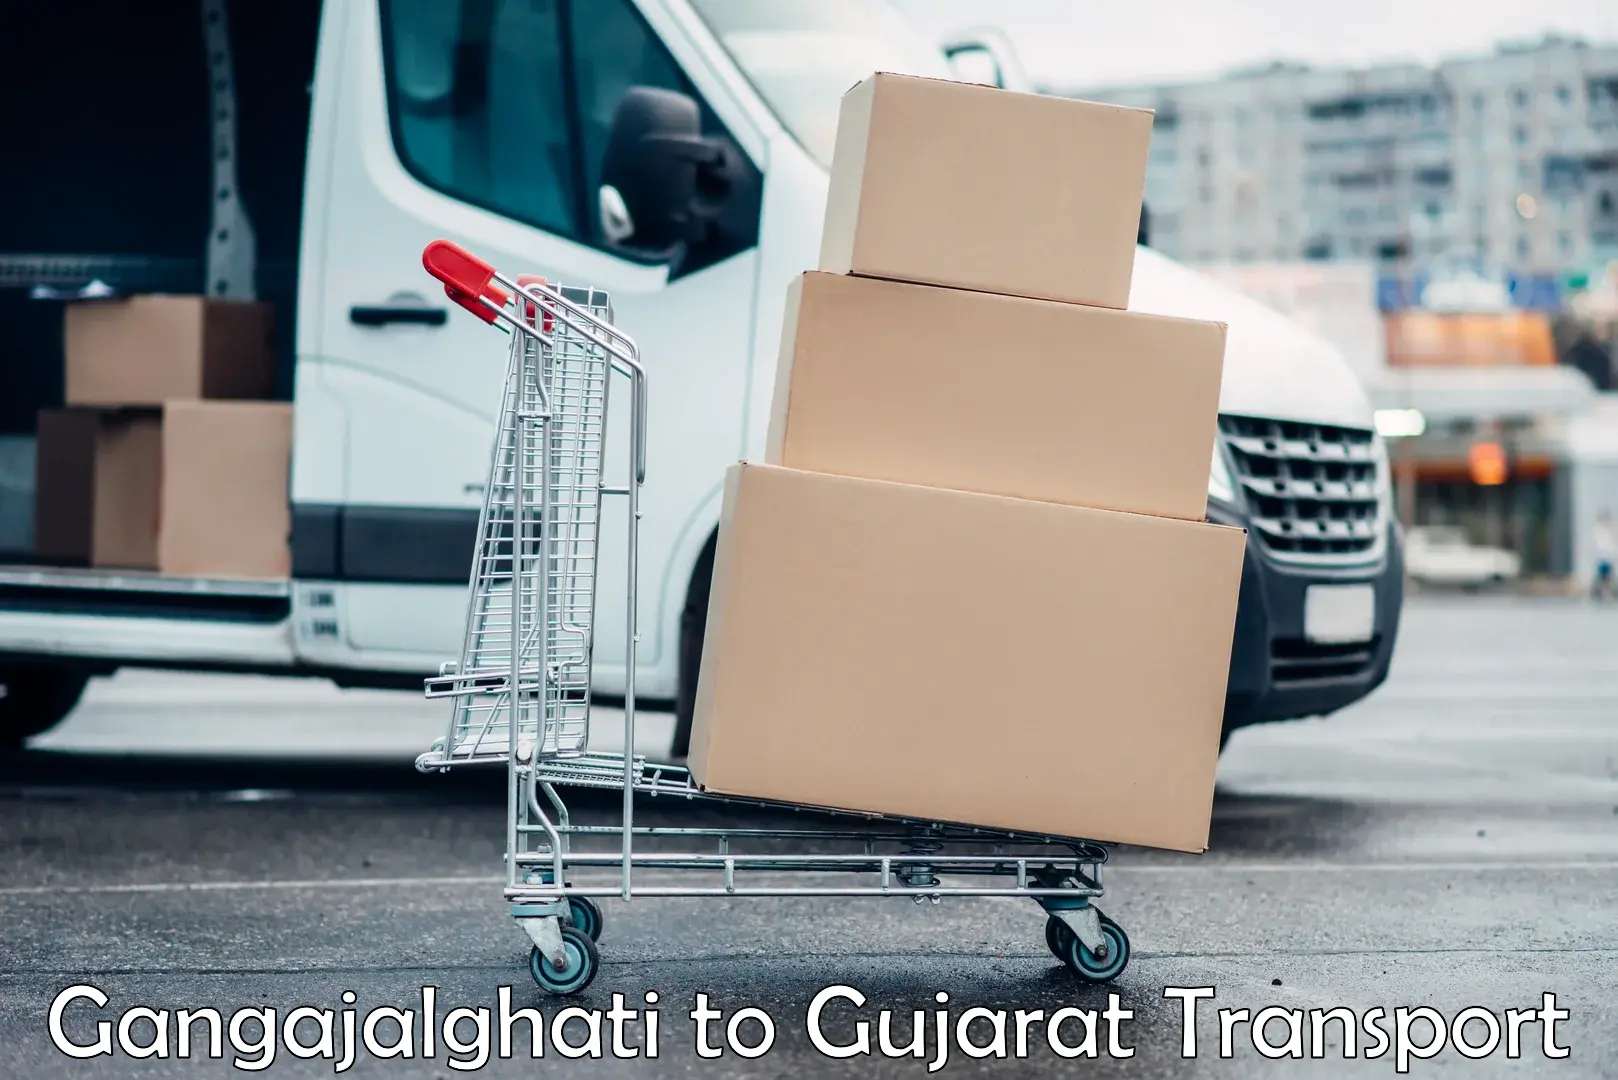 Road transport online services Gangajalghati to Himmatnagar